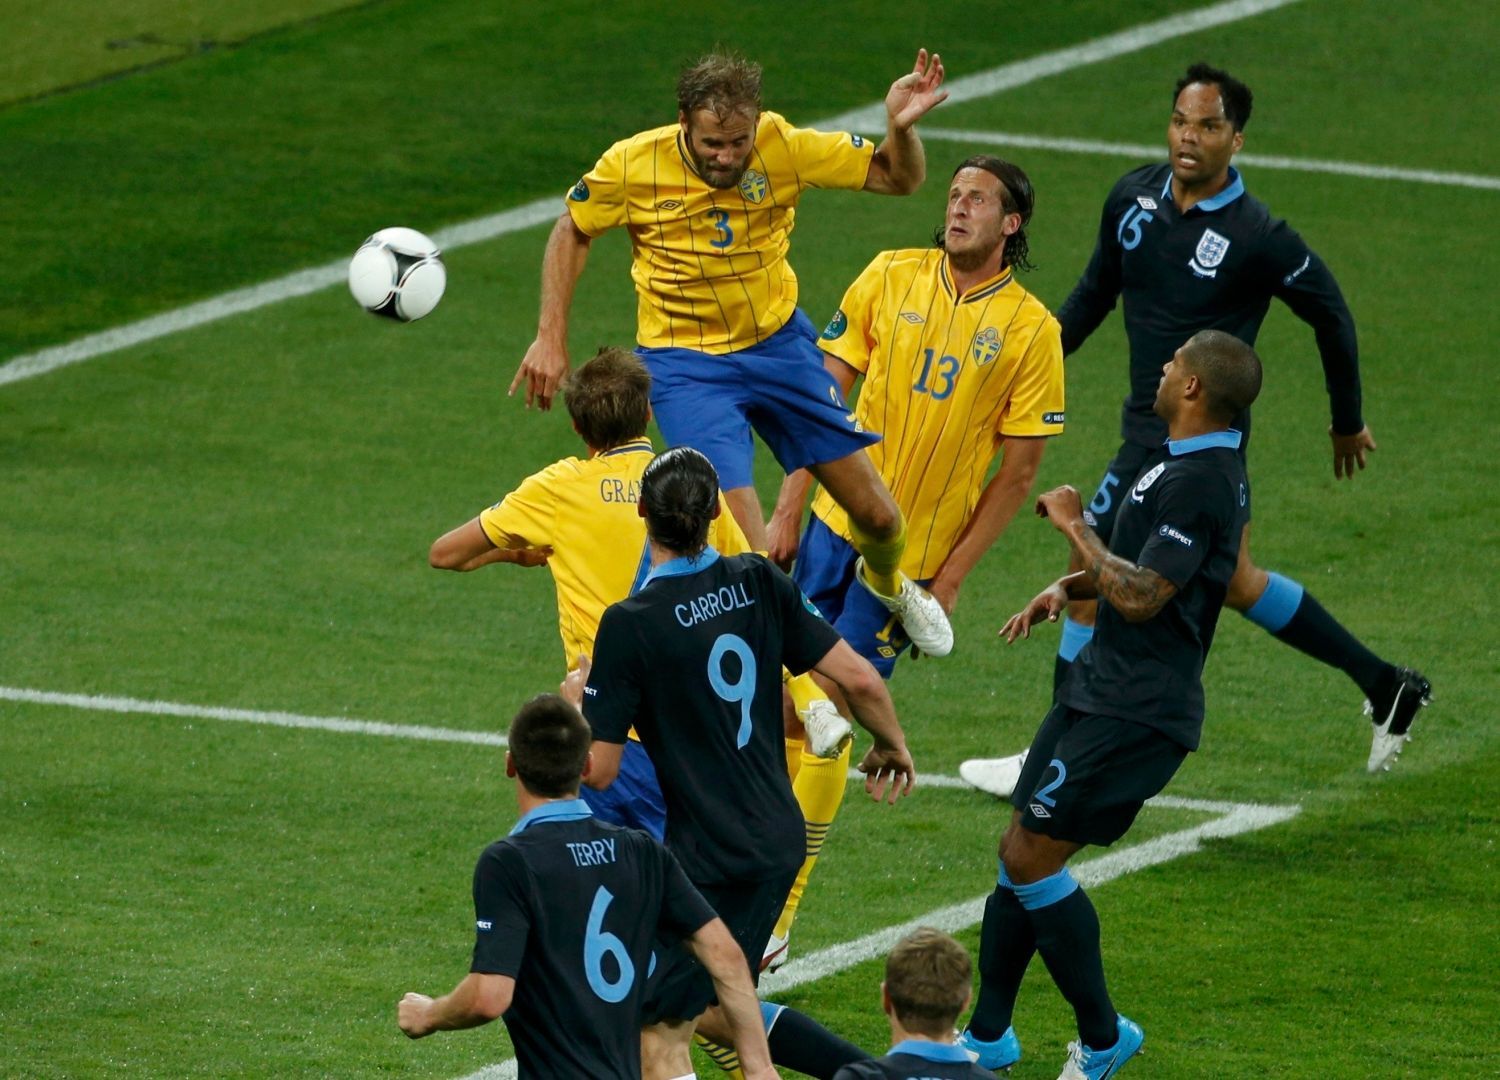 Švédský fotbalista Olof Mellberg skóruje druhý gól do sítě Angličanů v utkání skupiny D na Euru 2012